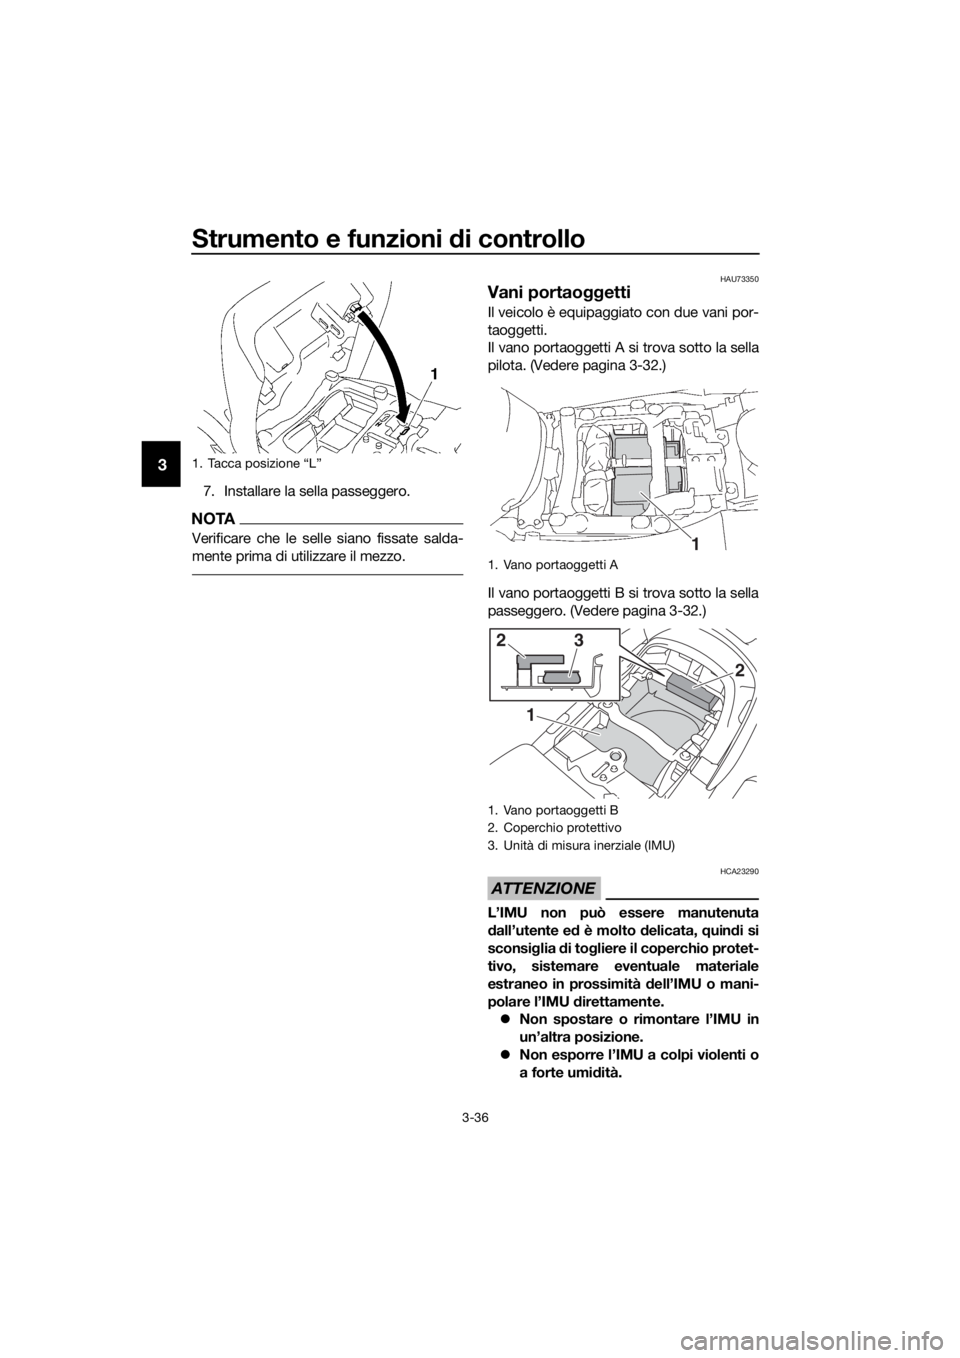 YAMAHA FJR1300AE 2016  Manuale duso (in Italian) Strumento e funzioni di controllo
3-36
3
7. Installare la sella passeggero.
NOTA
Verificare che le selle siano fissate salda-
mente prima di utilizzare il mezzo.
HAU73350
Vani portaoggetti
Il veicolo 